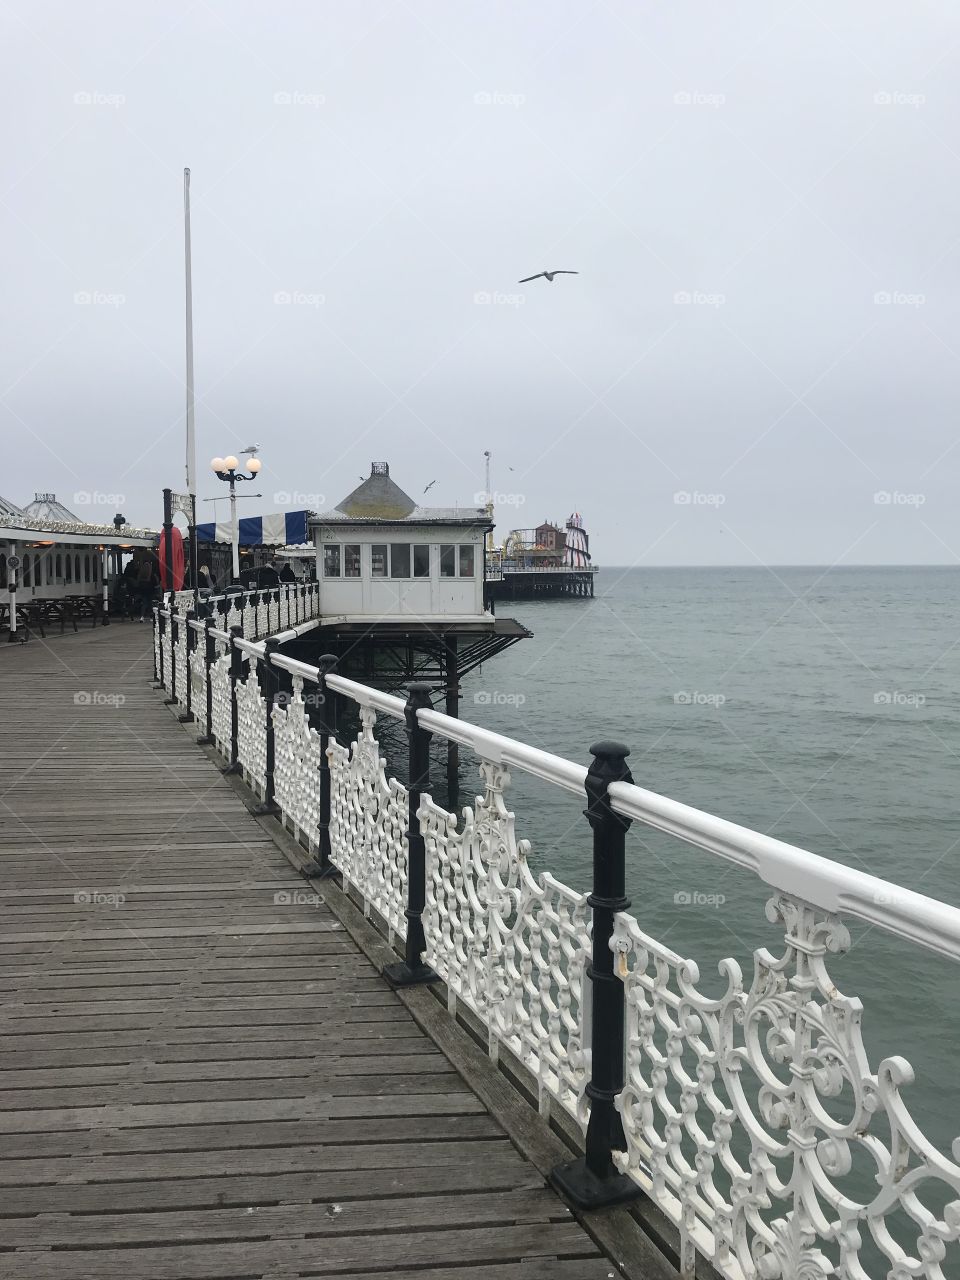 A walk down the pier